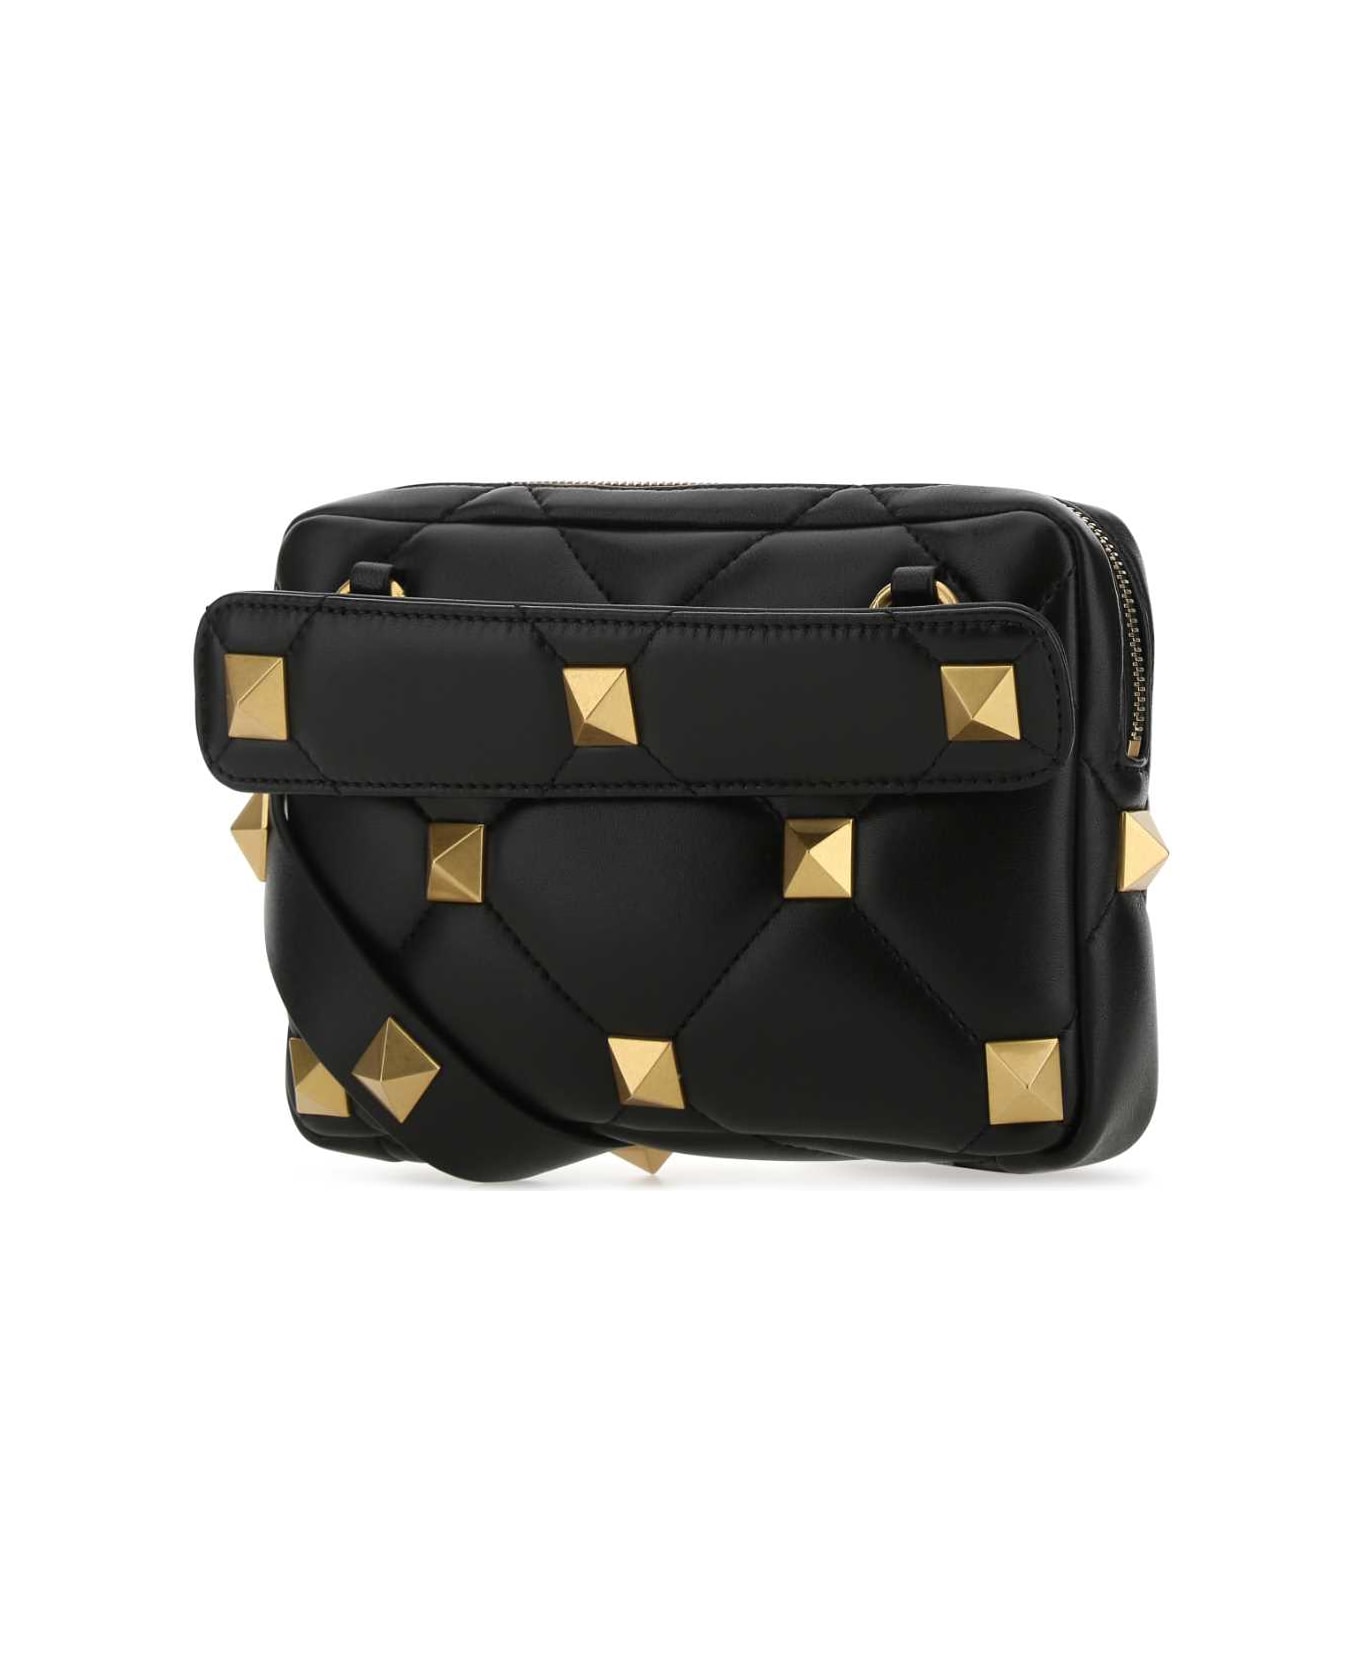 Valentino Garavani Black Nappa Leather Roman Stud Handbag - 0NO